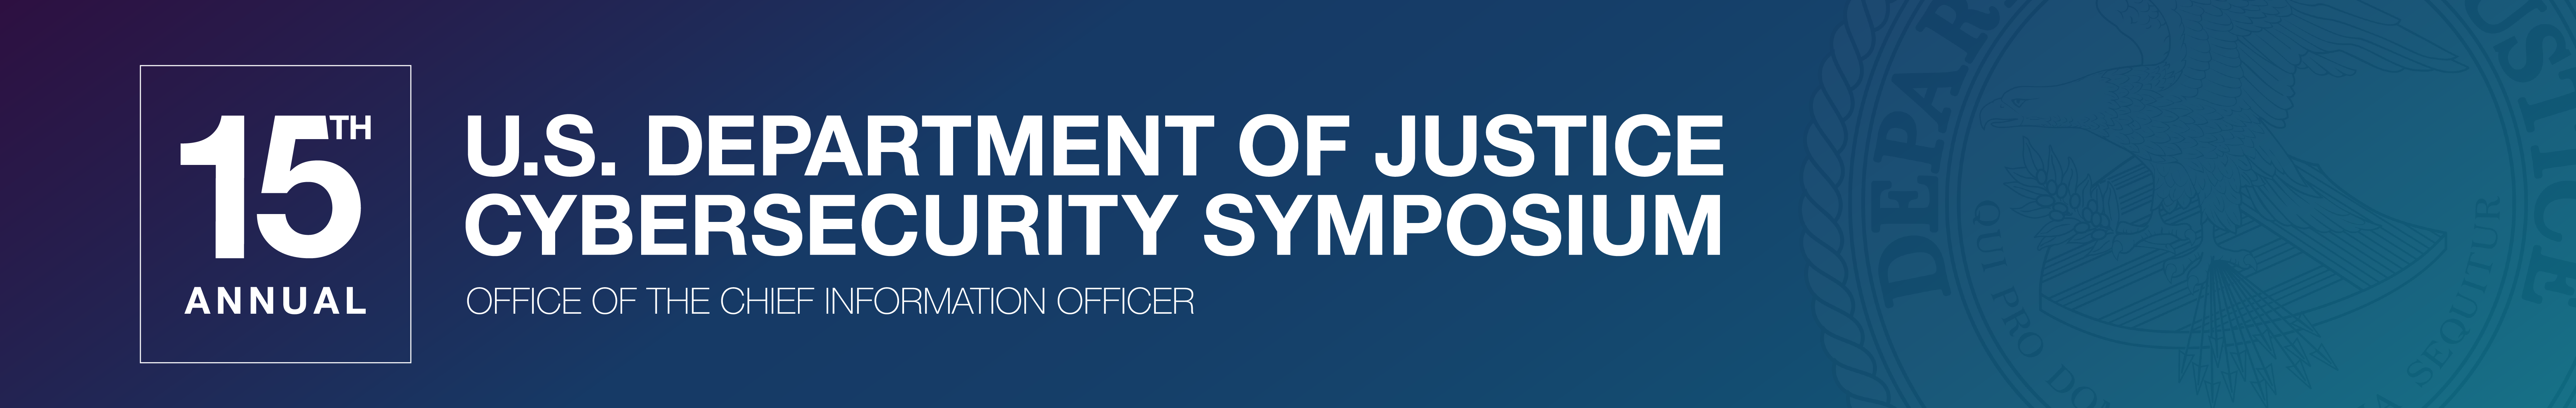 15th Annual DOJ Cybersecurity Symposium